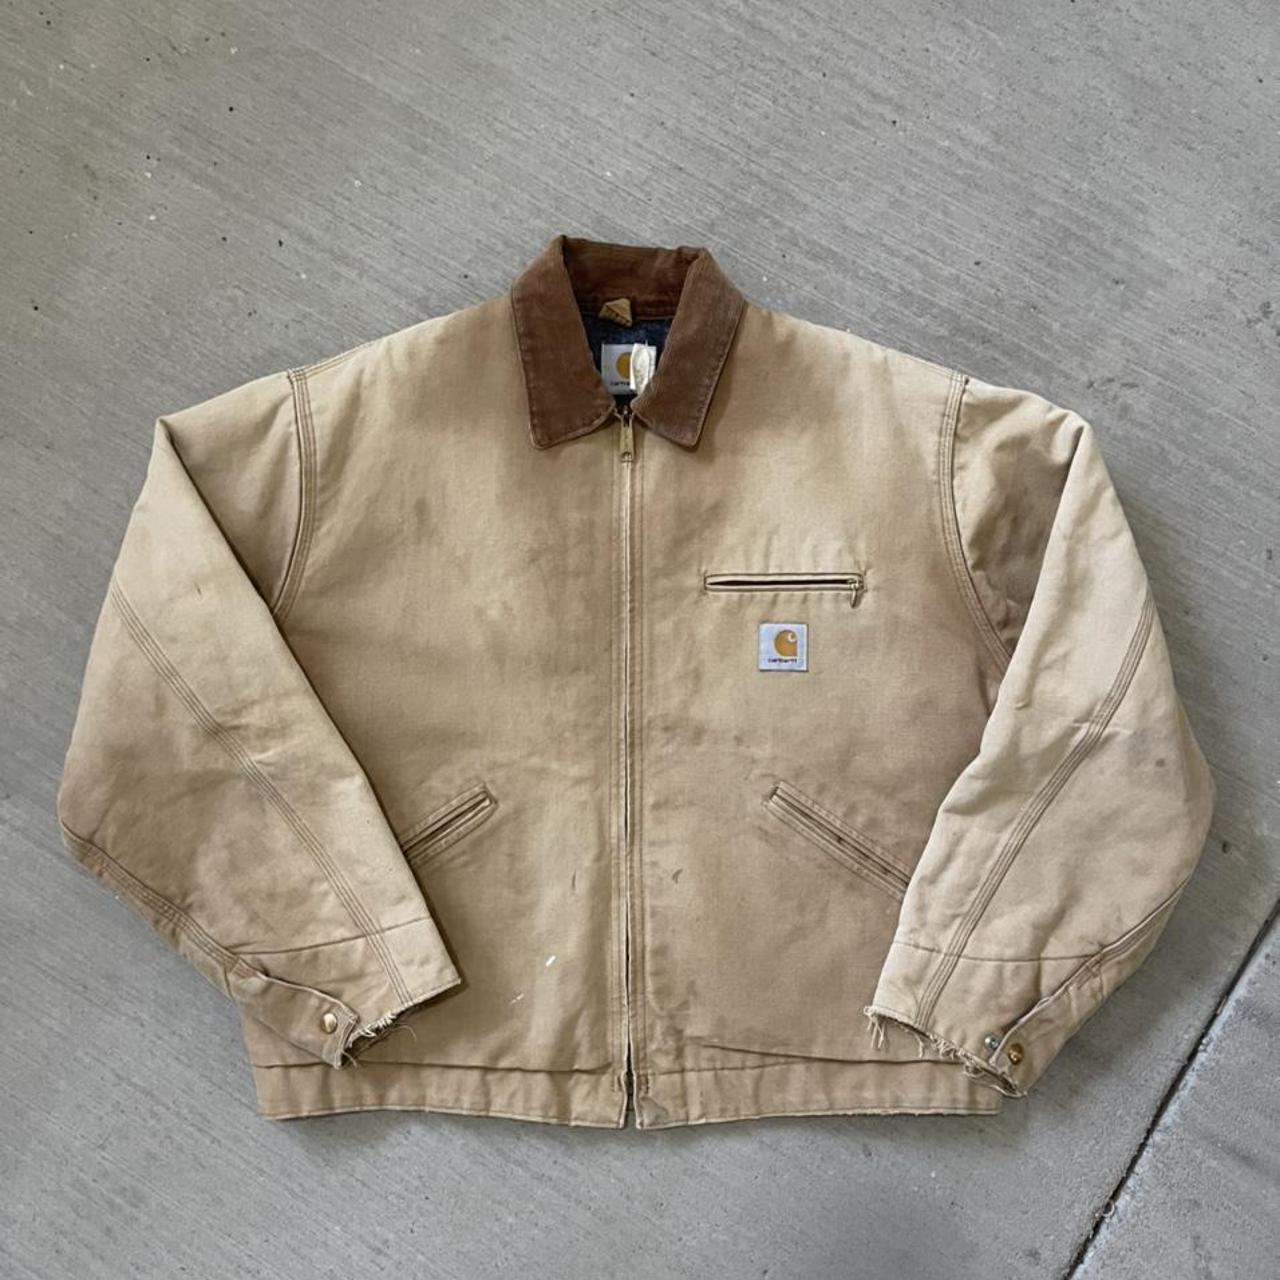 Vintage 90s Carhartt Denali Work Wear Jacket Size XL... - Depop